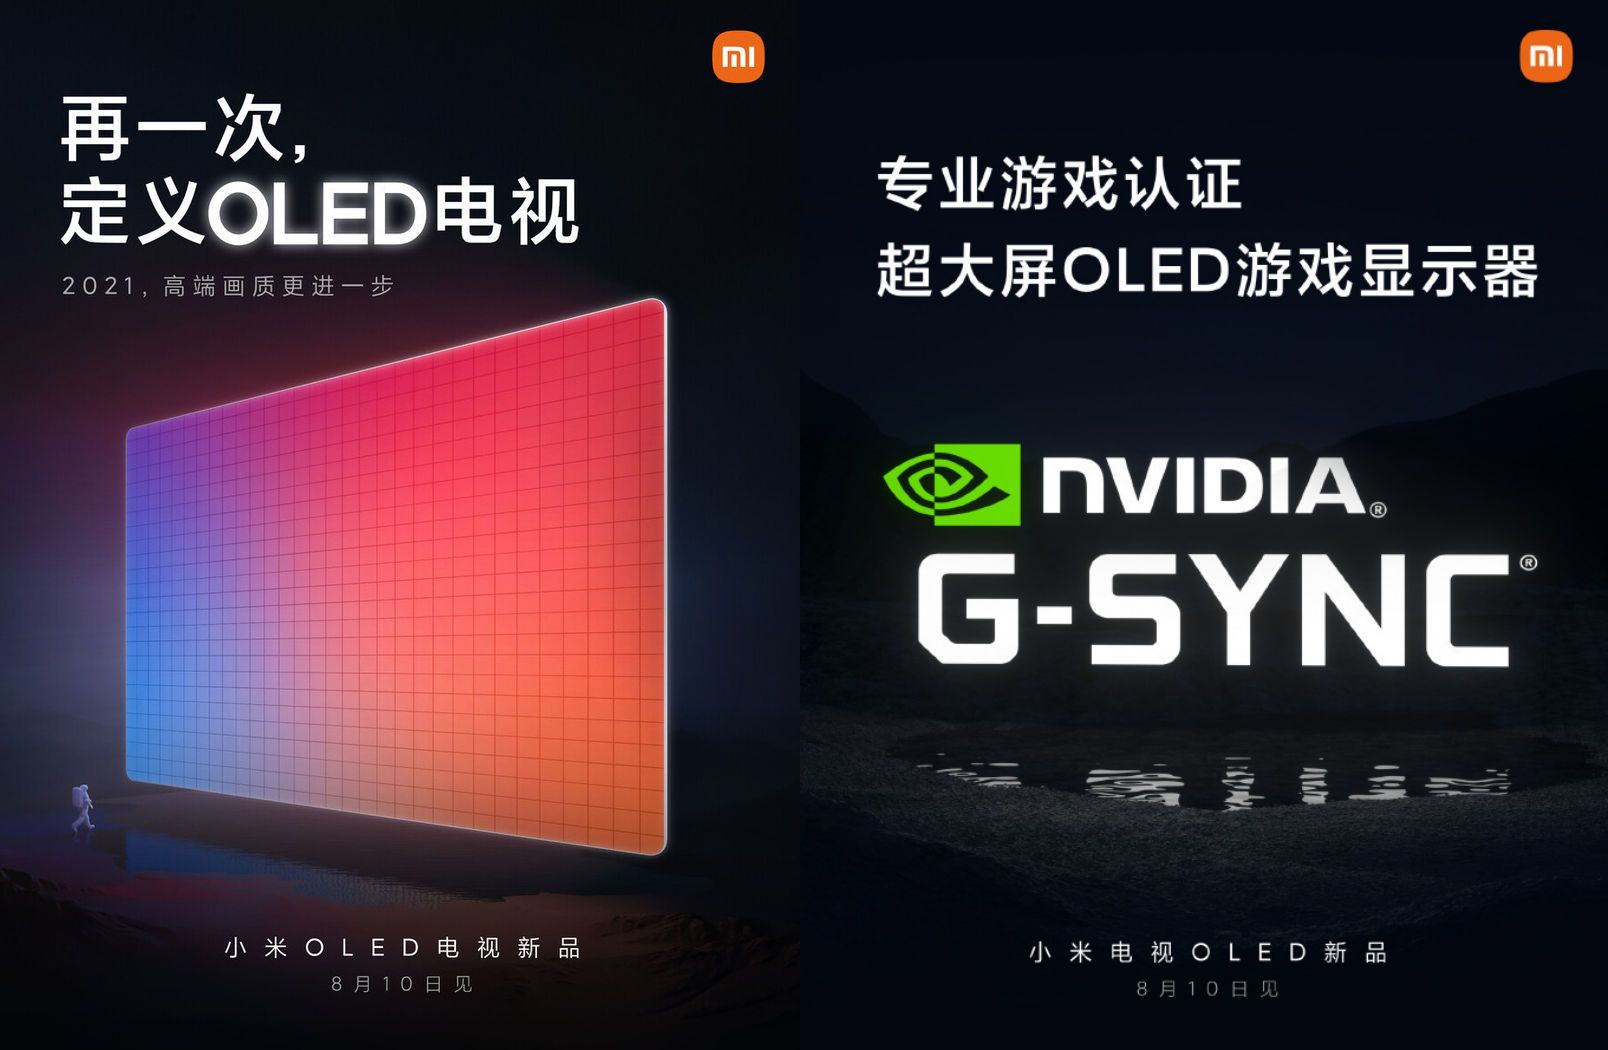 Xiaomi hé lộ TV OLED hỗ trợ Nvidia G-Sync dành cho game thủ